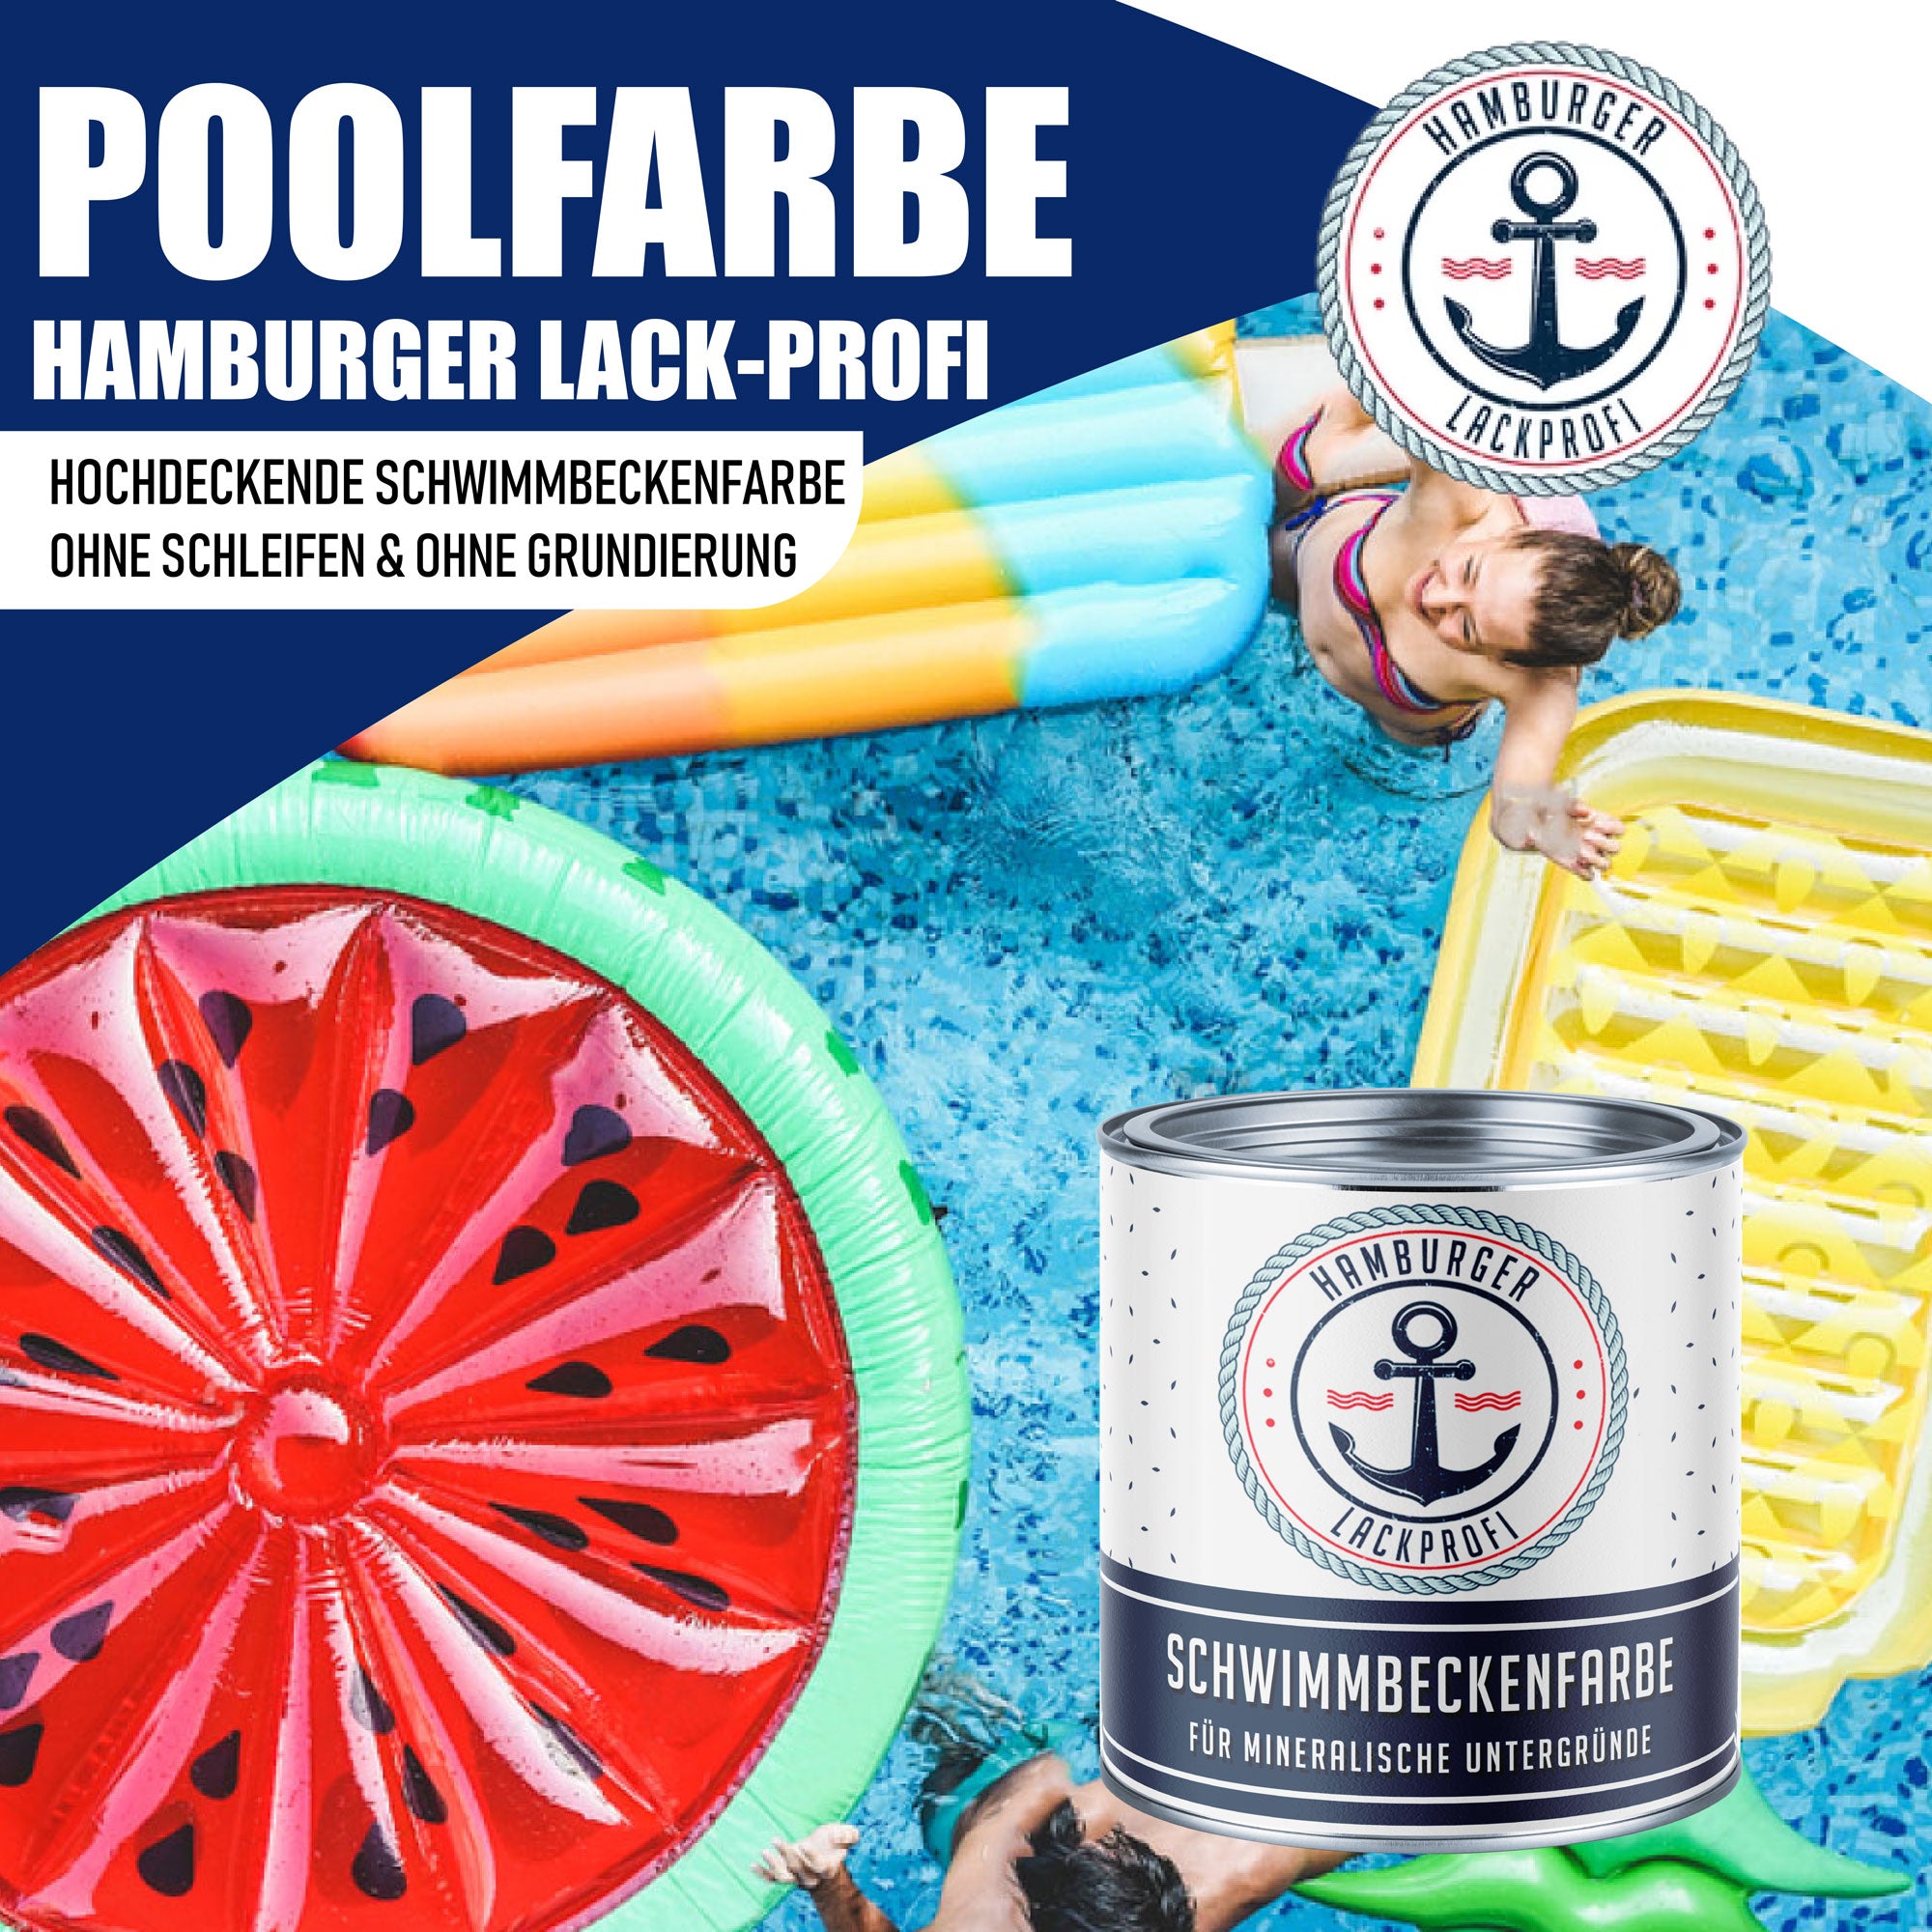 Hamburger Lack-Profi Schwimmbeckenfarbe Verkehrspurpur RAL 4006 - hochdeckende Poolfarbe